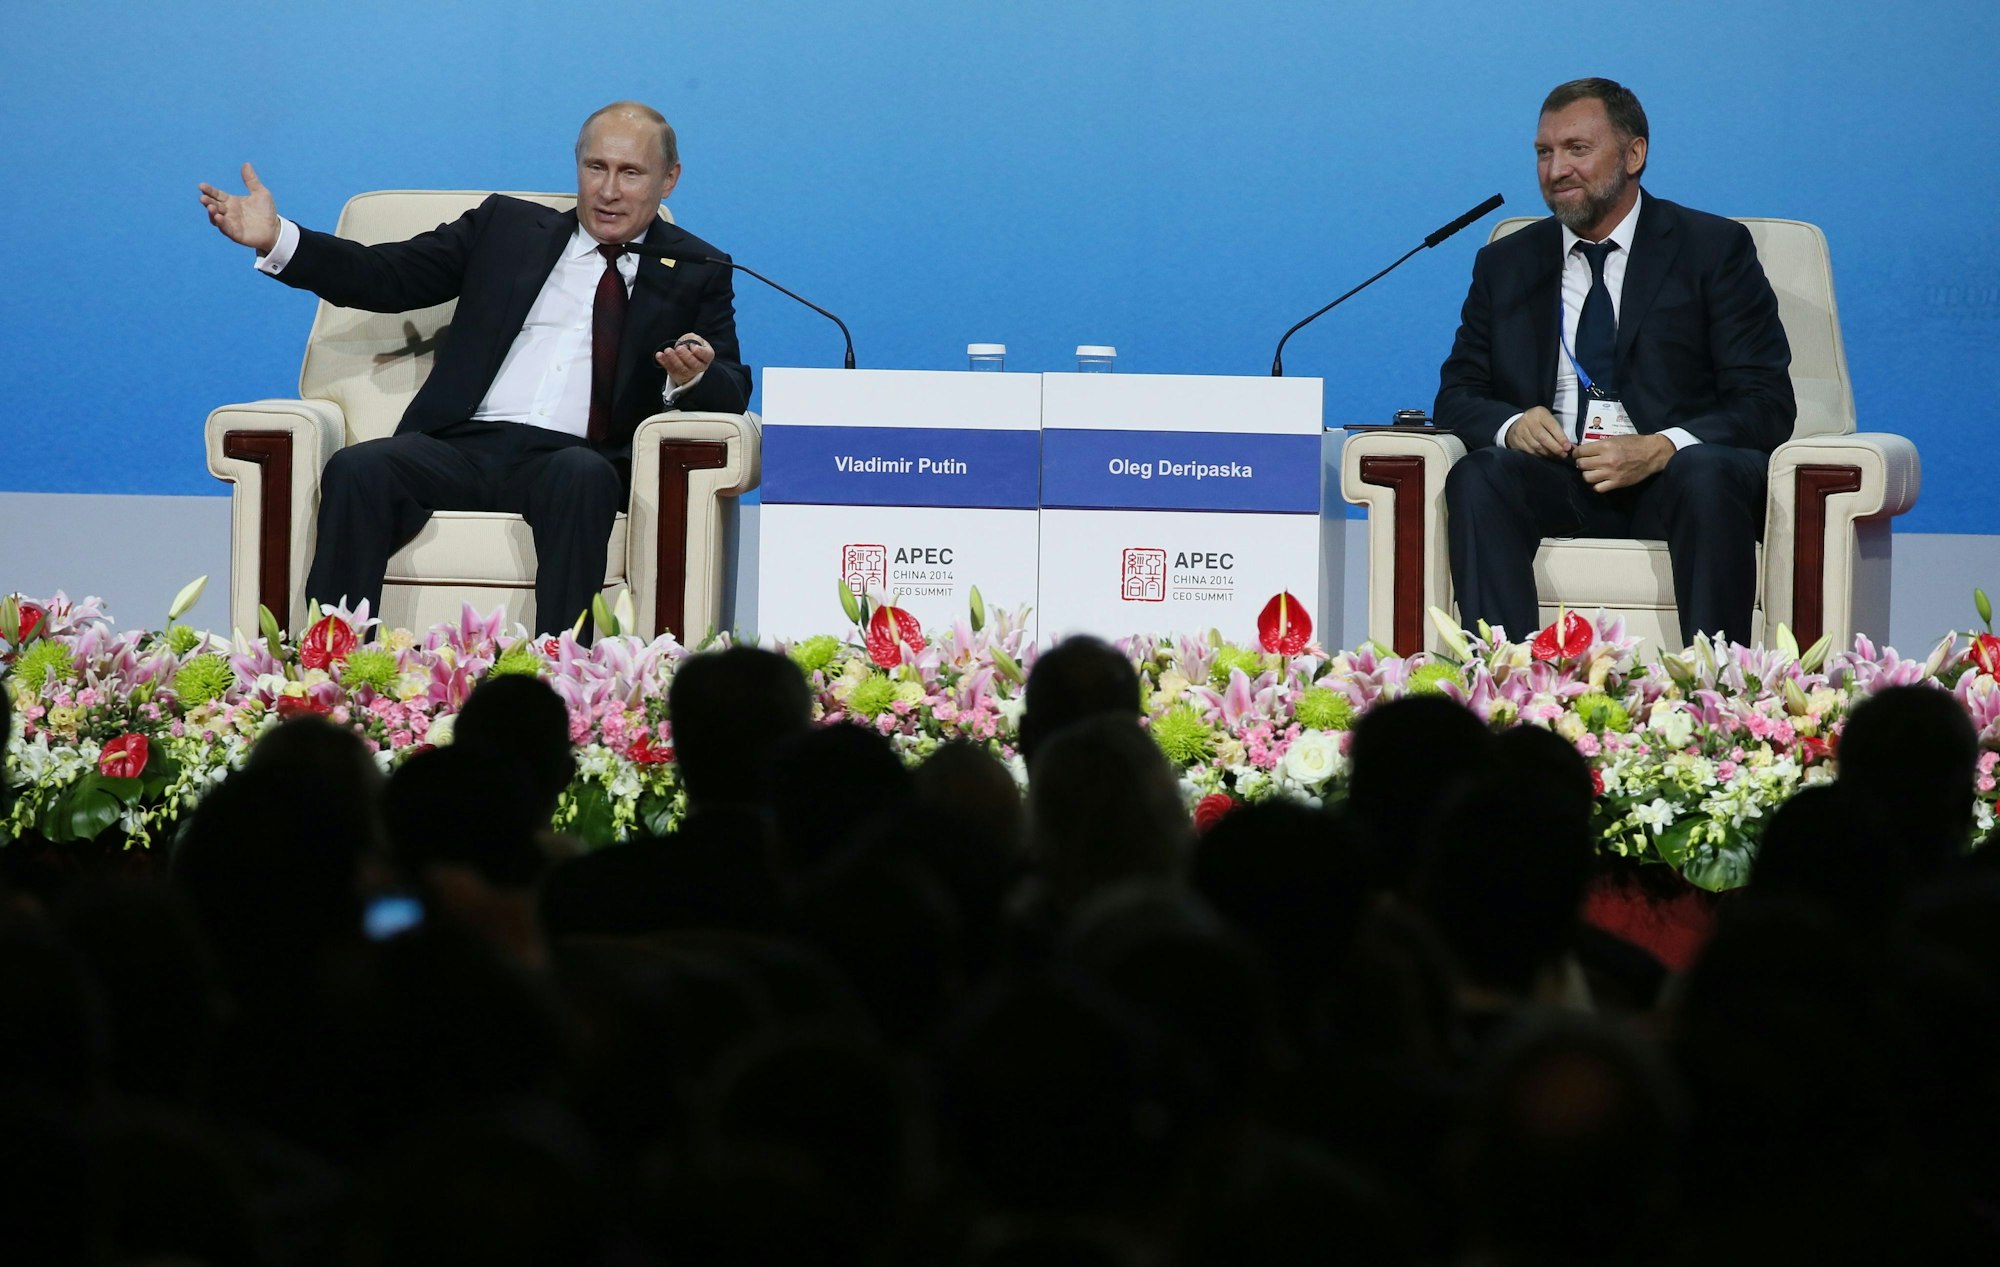 Der russische Oligarchen Oleg Deripaska (r.) sitzt gemeinsam mit dem russischen Präsidenten Wladimir Putin (l.) auf einer Bühne.